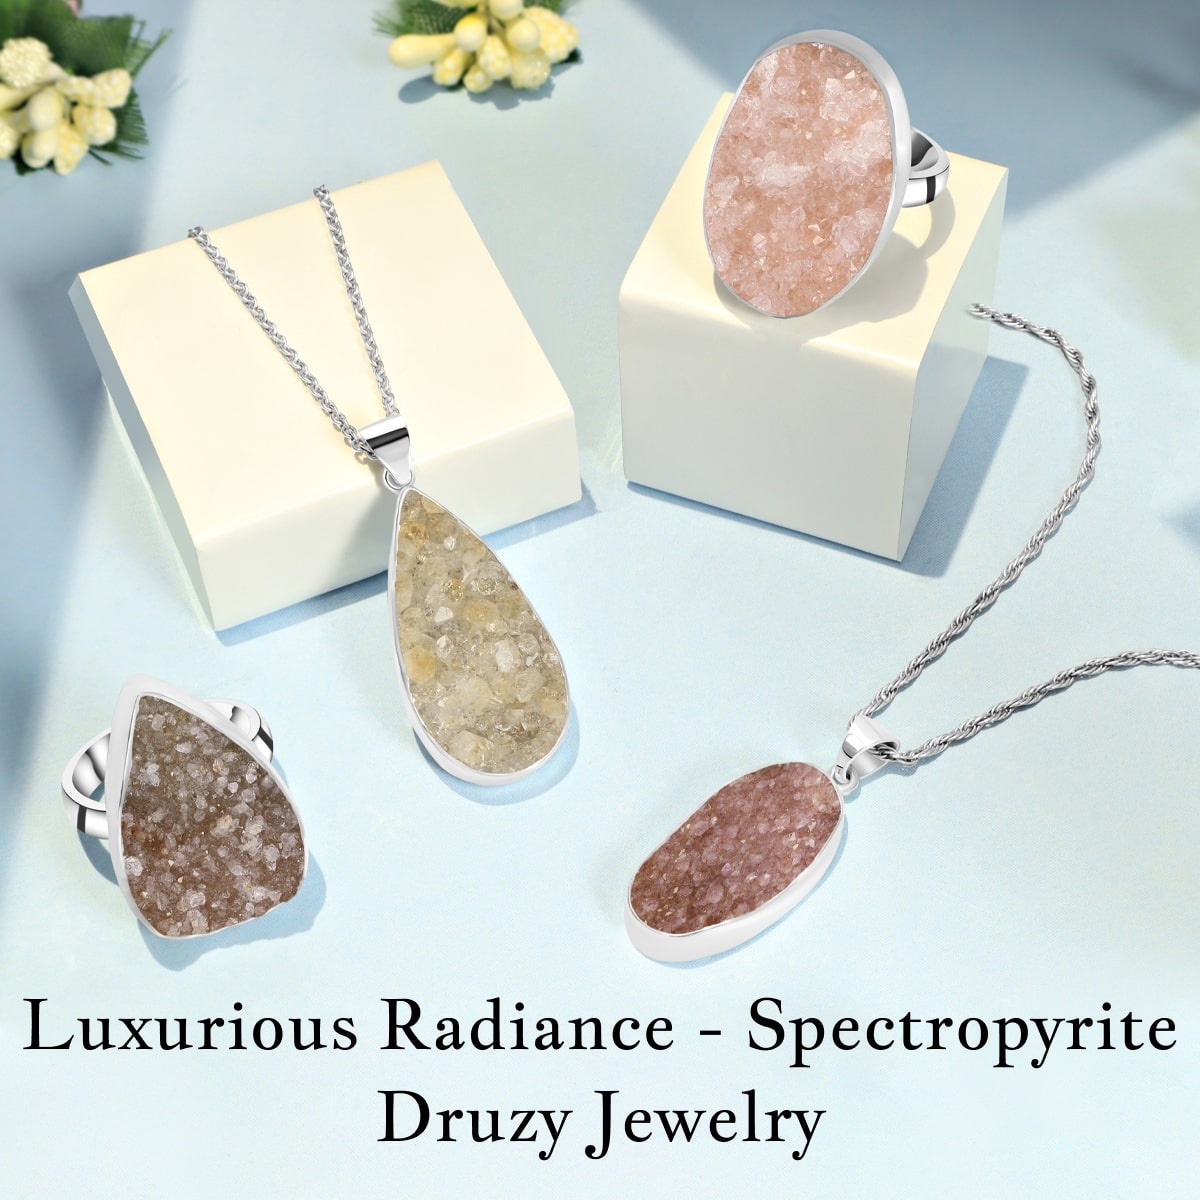 Spectropyrite Druzy Jewelry